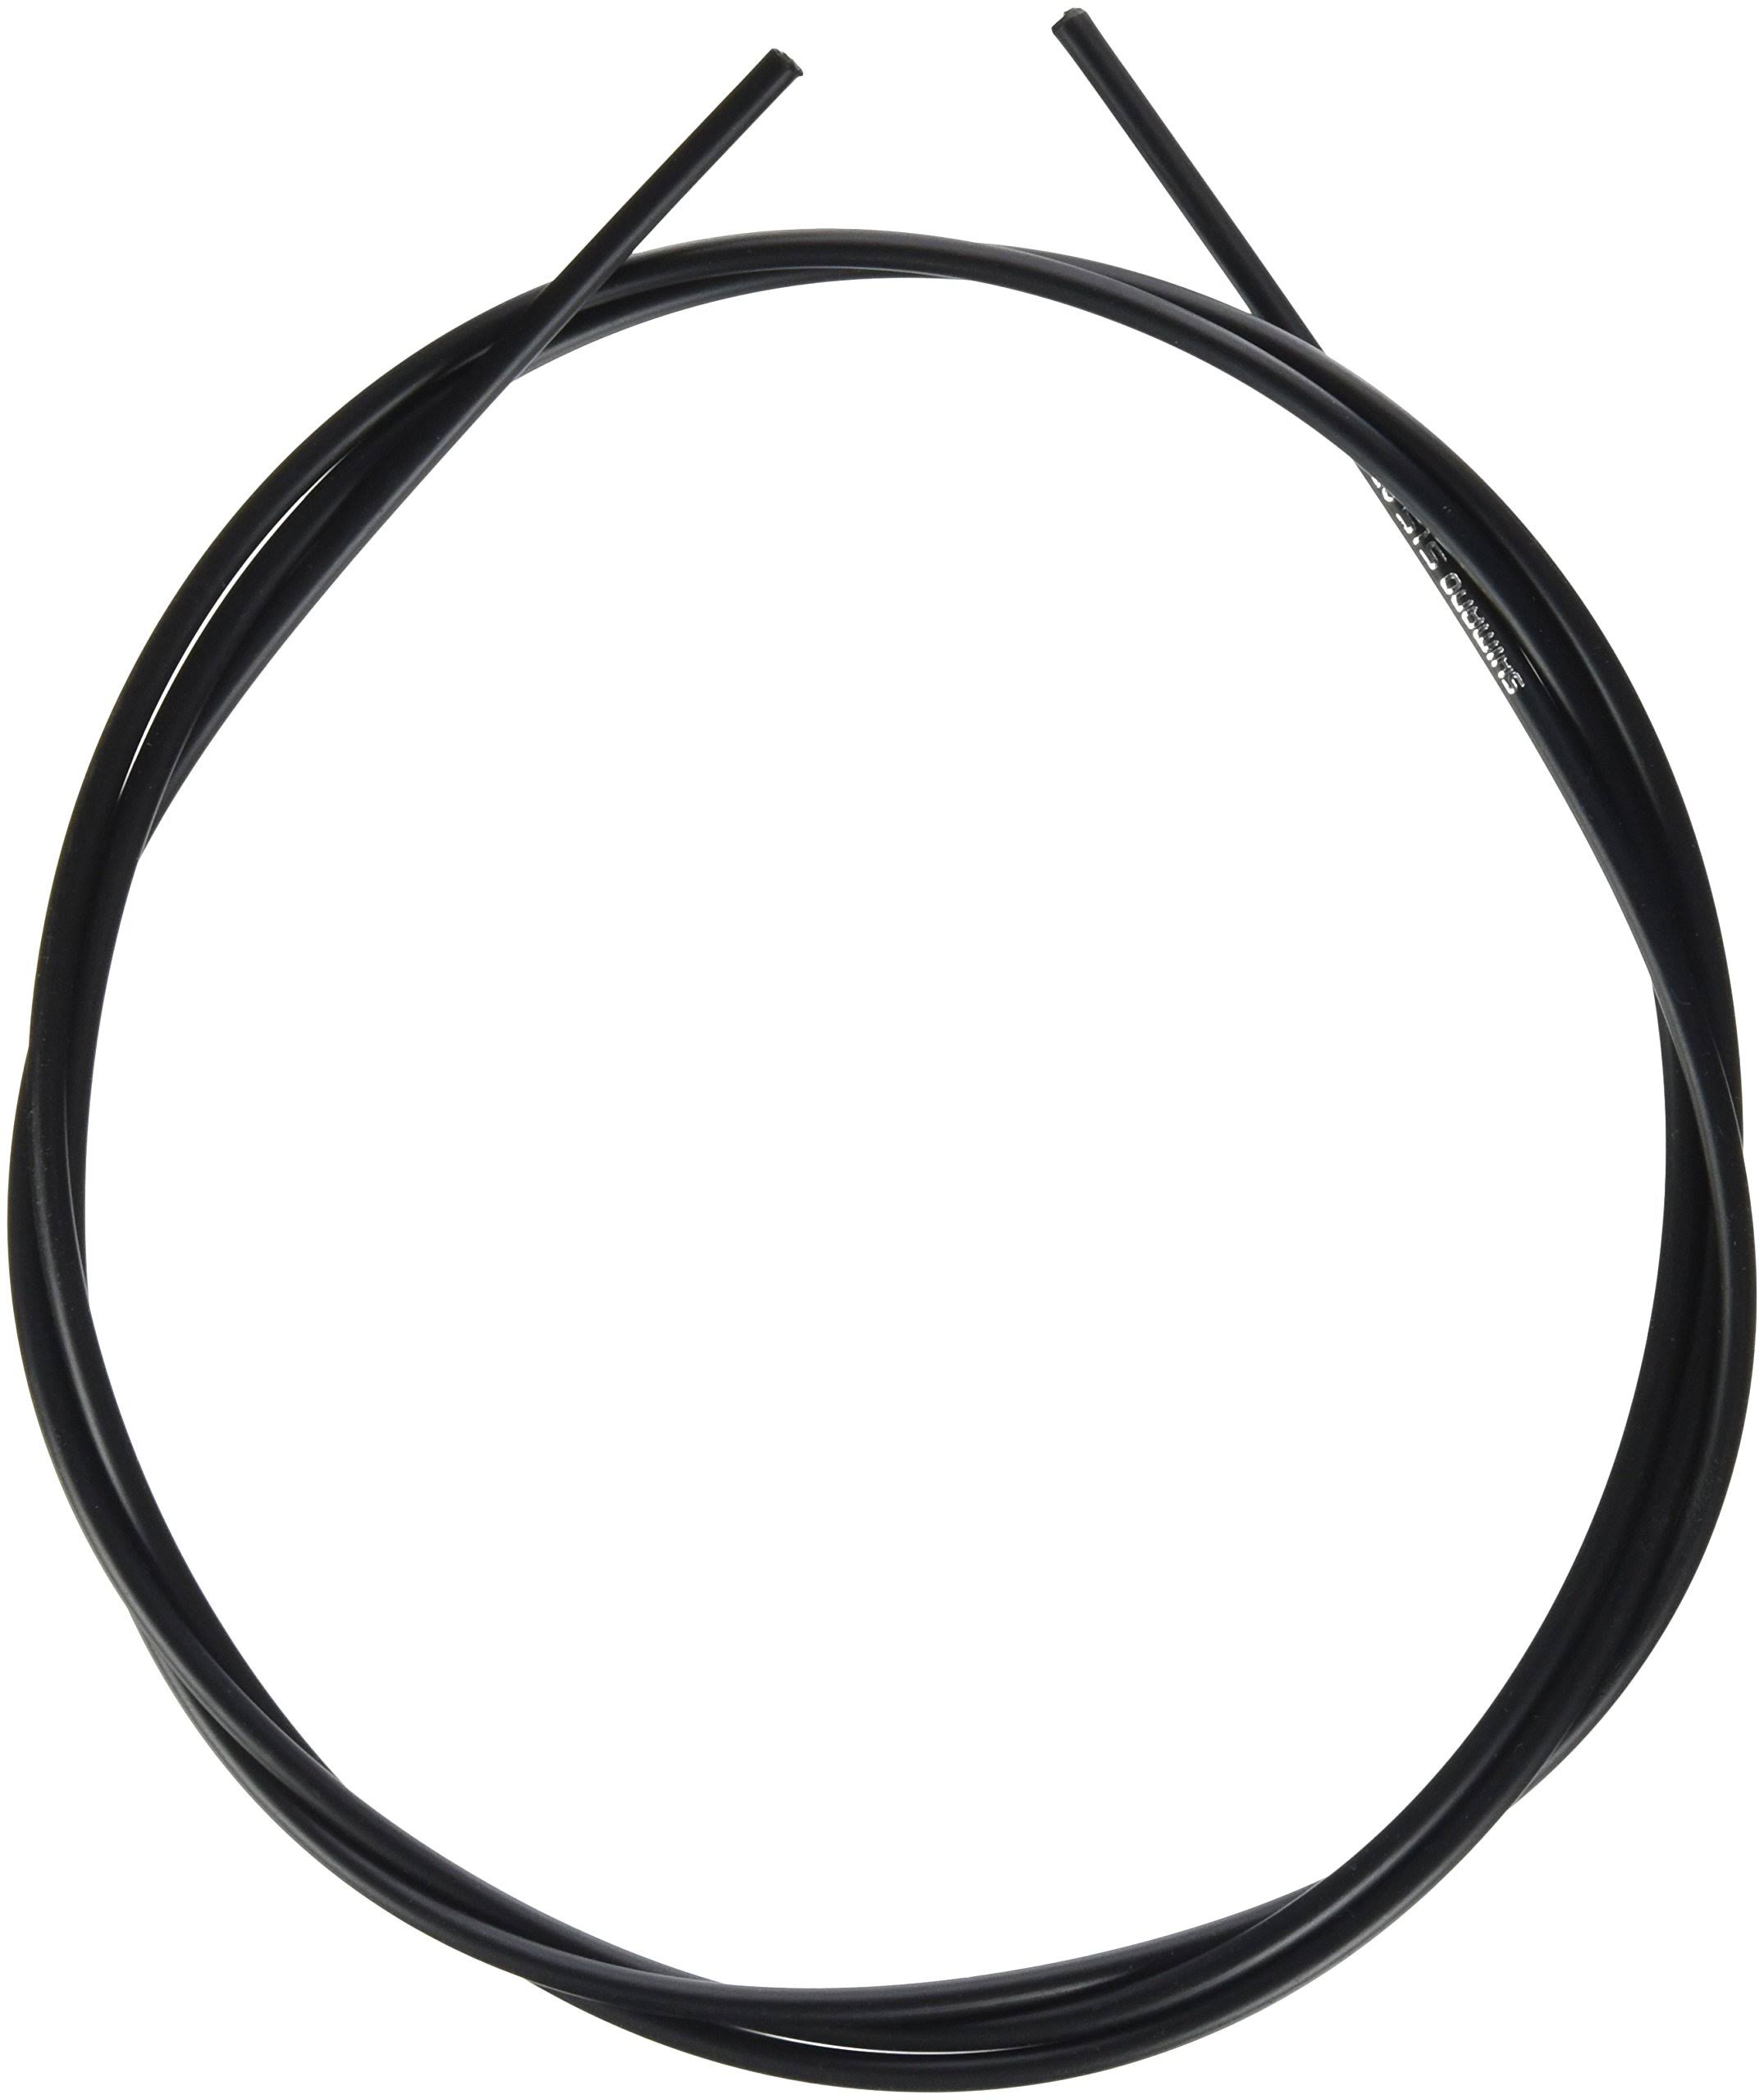 Shimano Road Shift Cable Set - Black